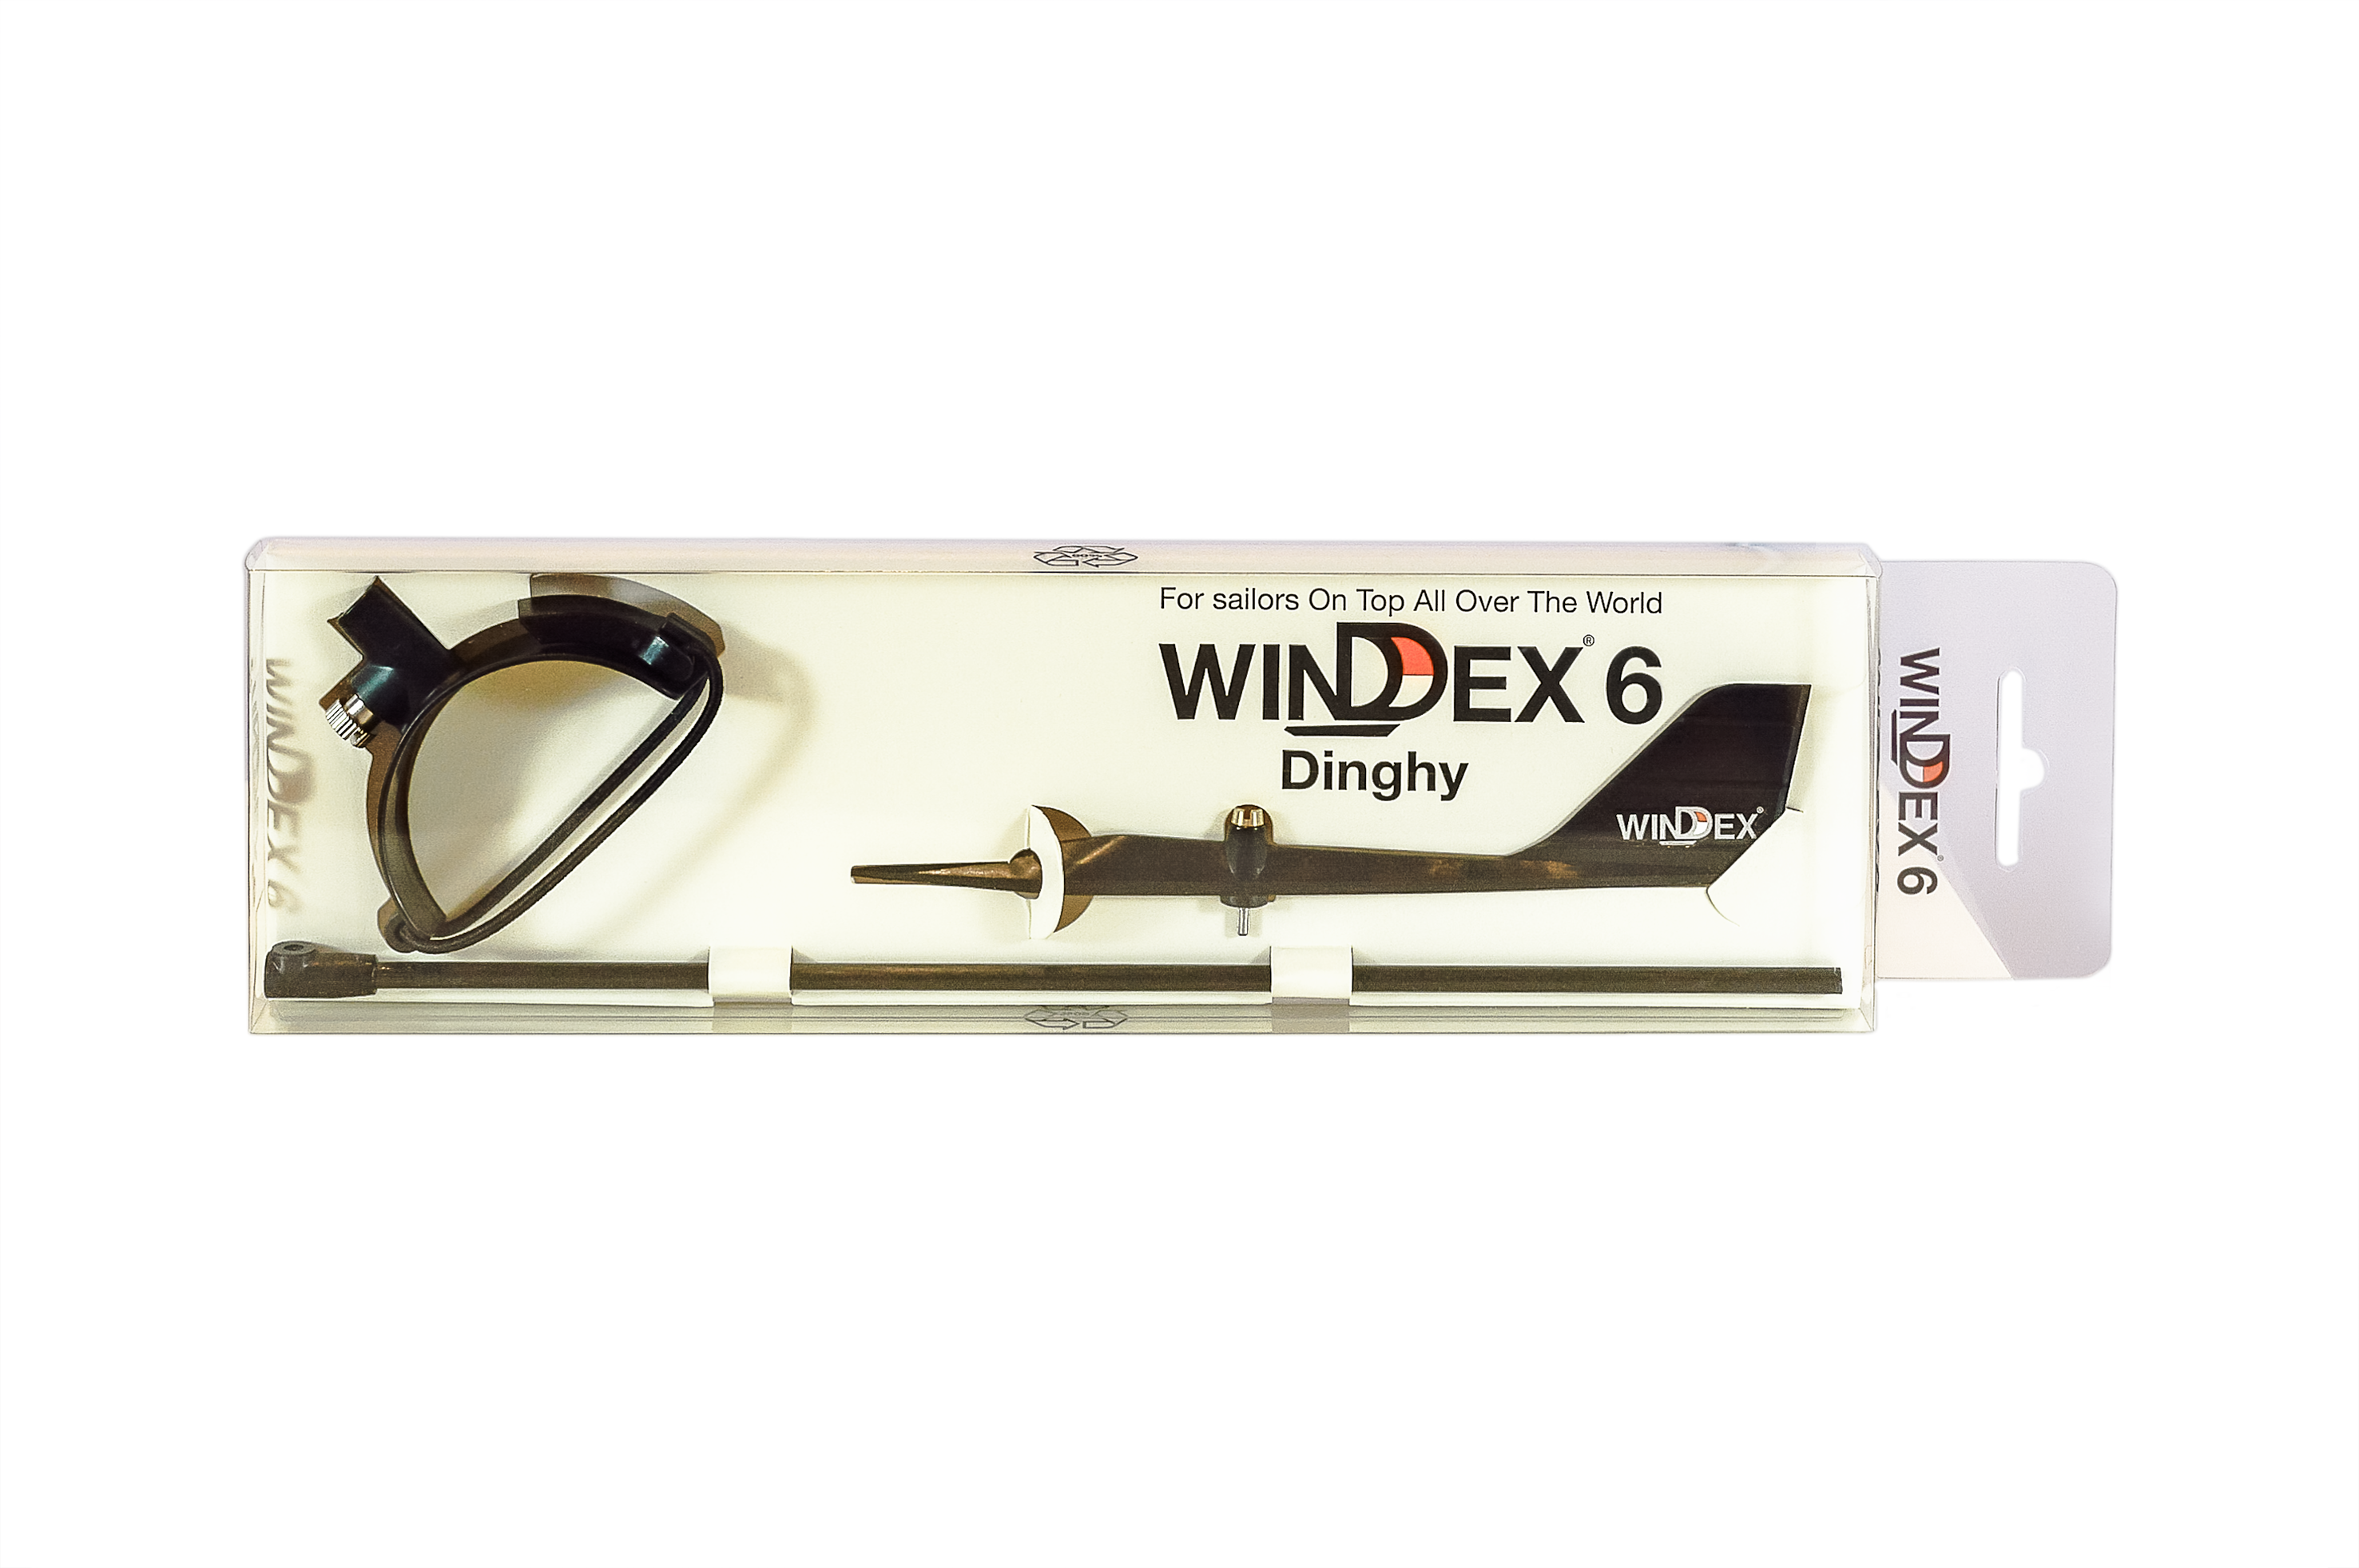 Windex 6 Windanzeiger